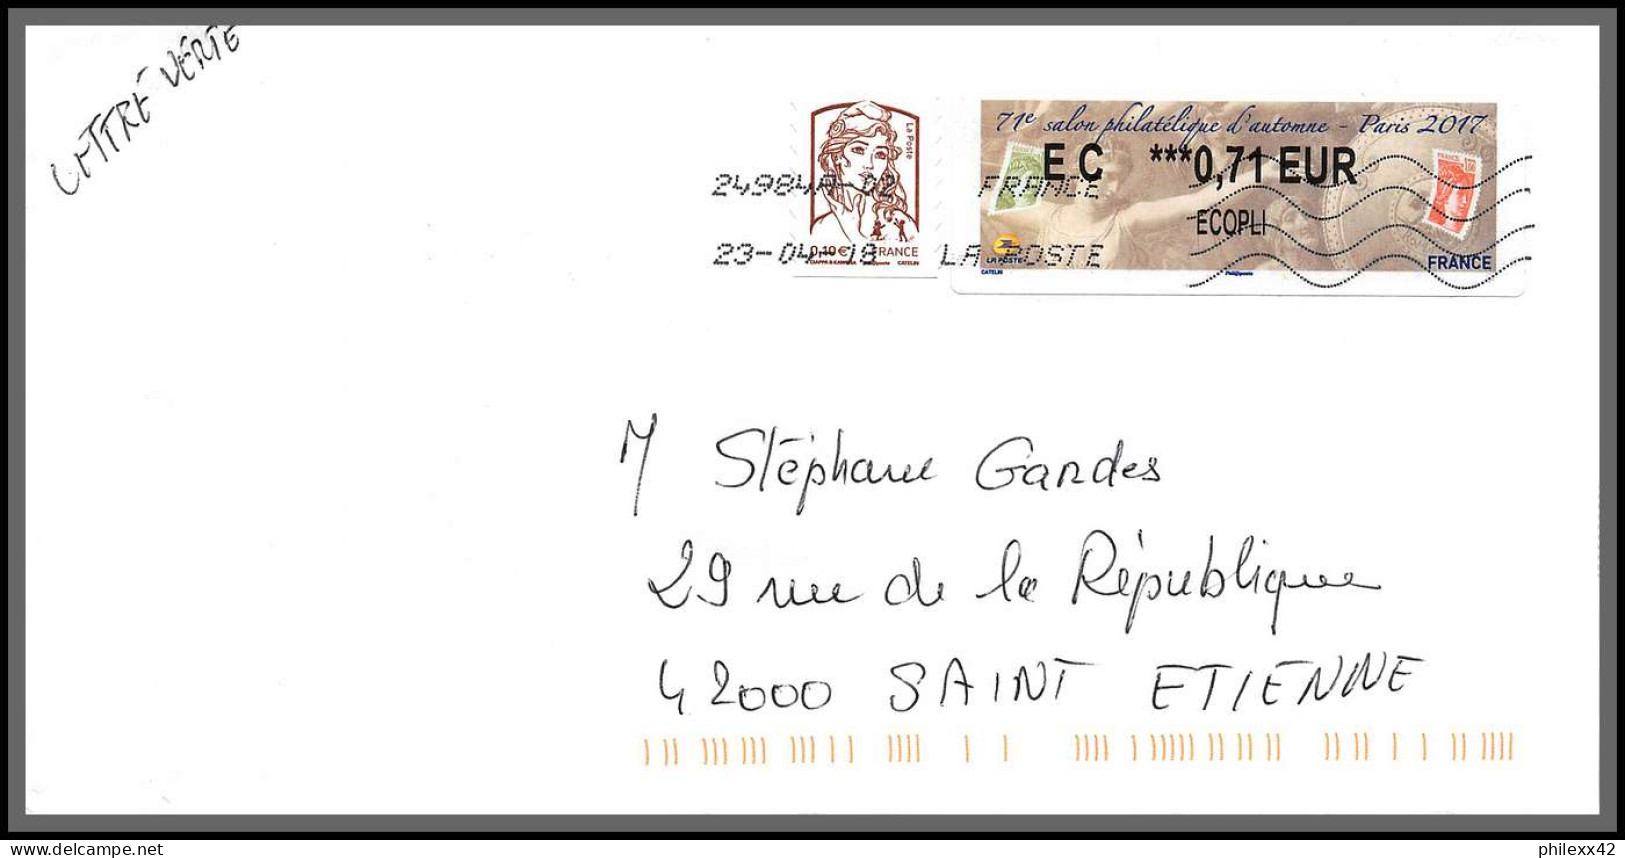 95892 - lot de 15 courriers lettres enveloppes de l'année 2018 divers affranchissements en EUROS